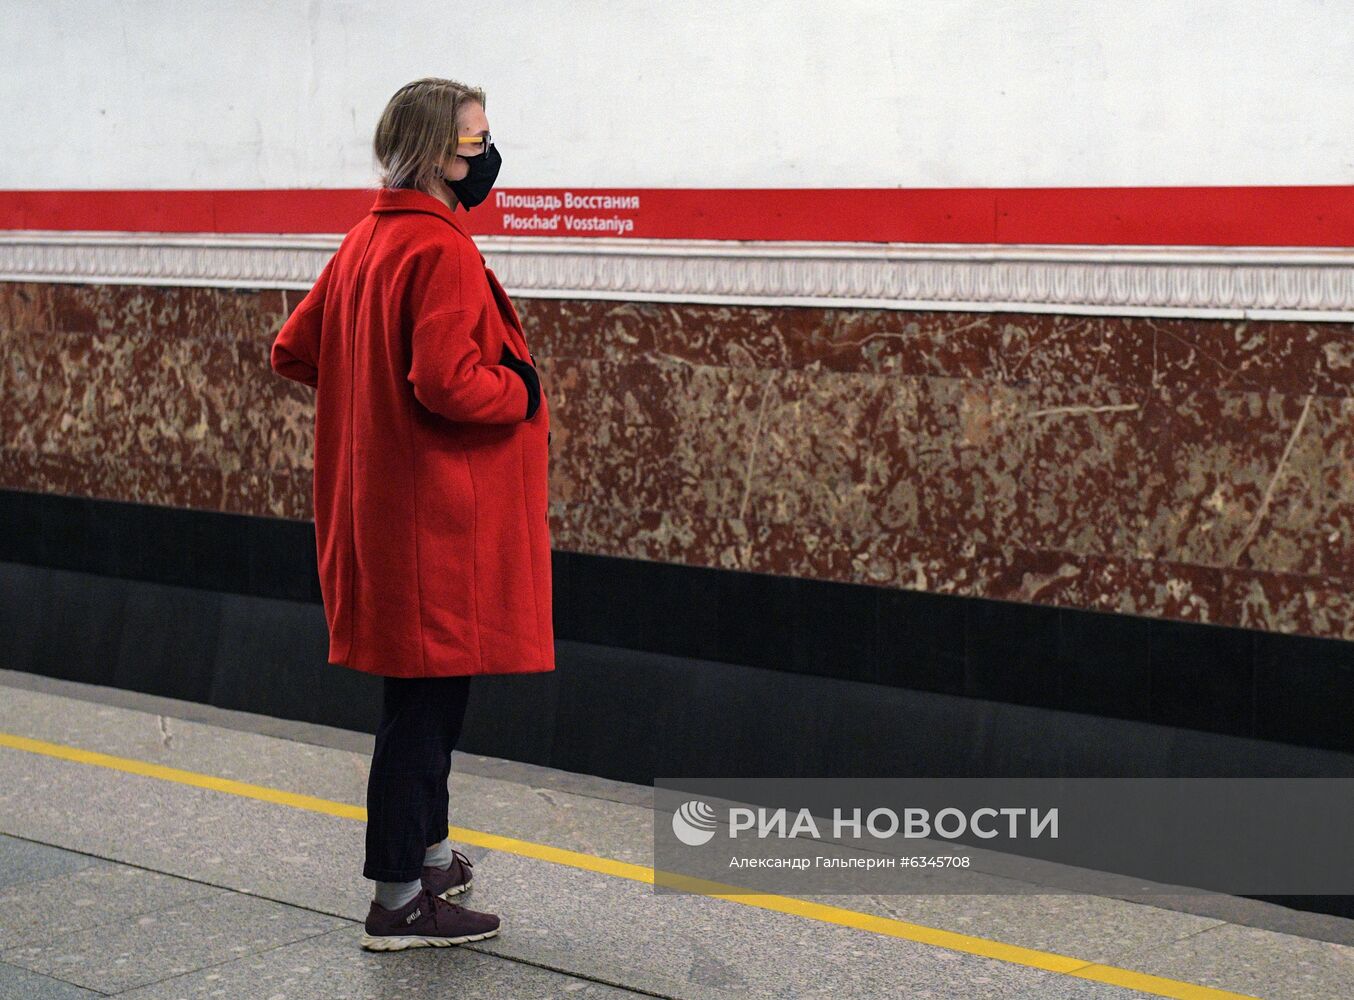 Масочный режим ужесточили в общественном транспорте Санкт-Петербурга